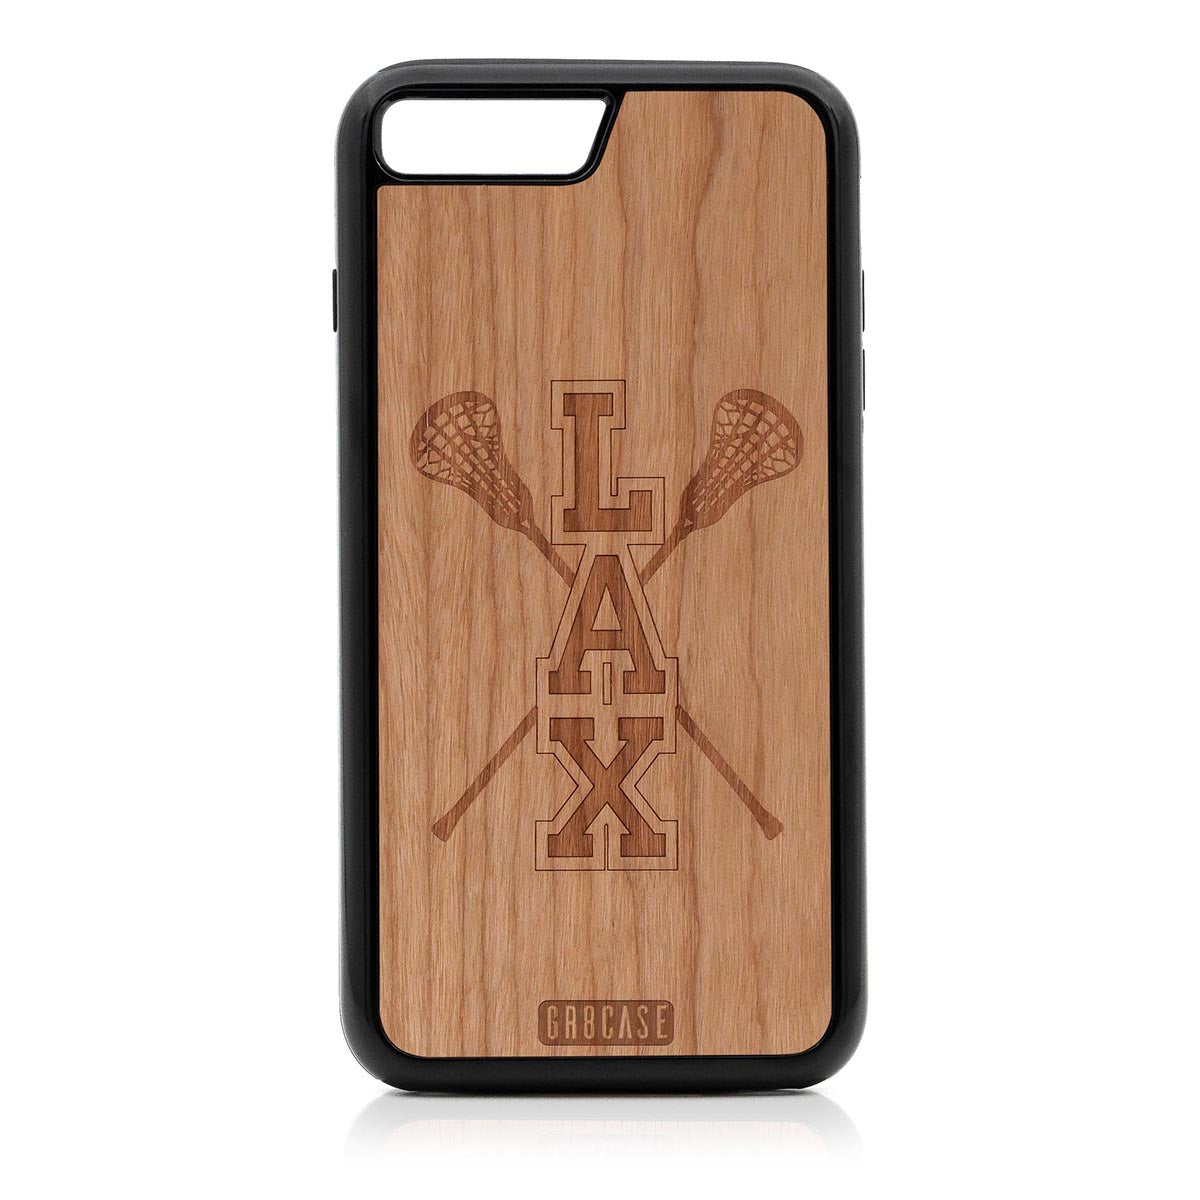 Lacrosse (LAX) Sticks Design Wood Case For iPhone 7 Plus / 8 Plus by GR8CASE